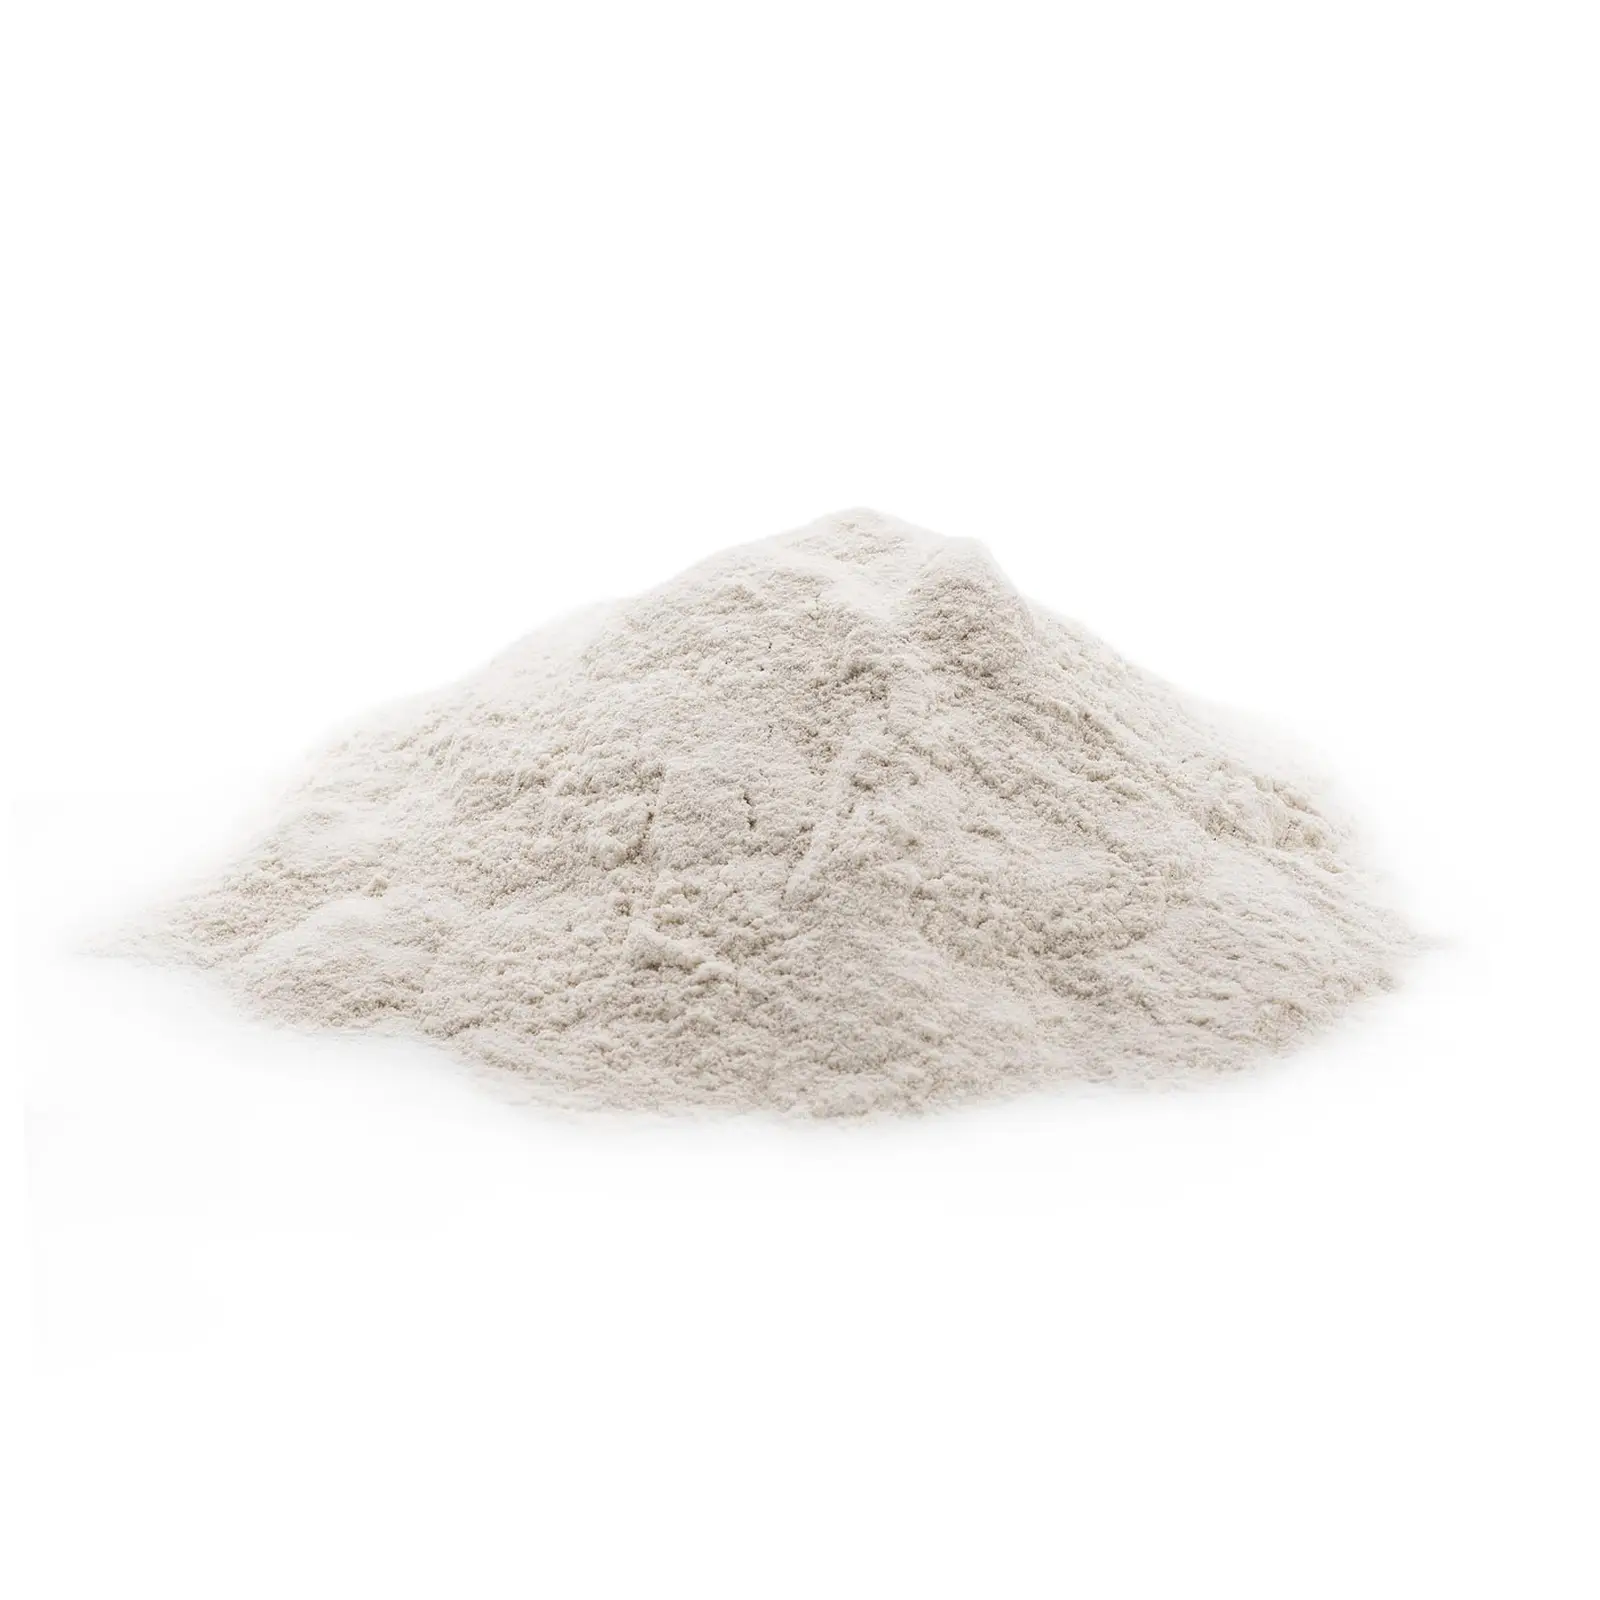 Aglutinante para pellets - 20 kg - almidón de trigo - 5,5 - 7,5 pH